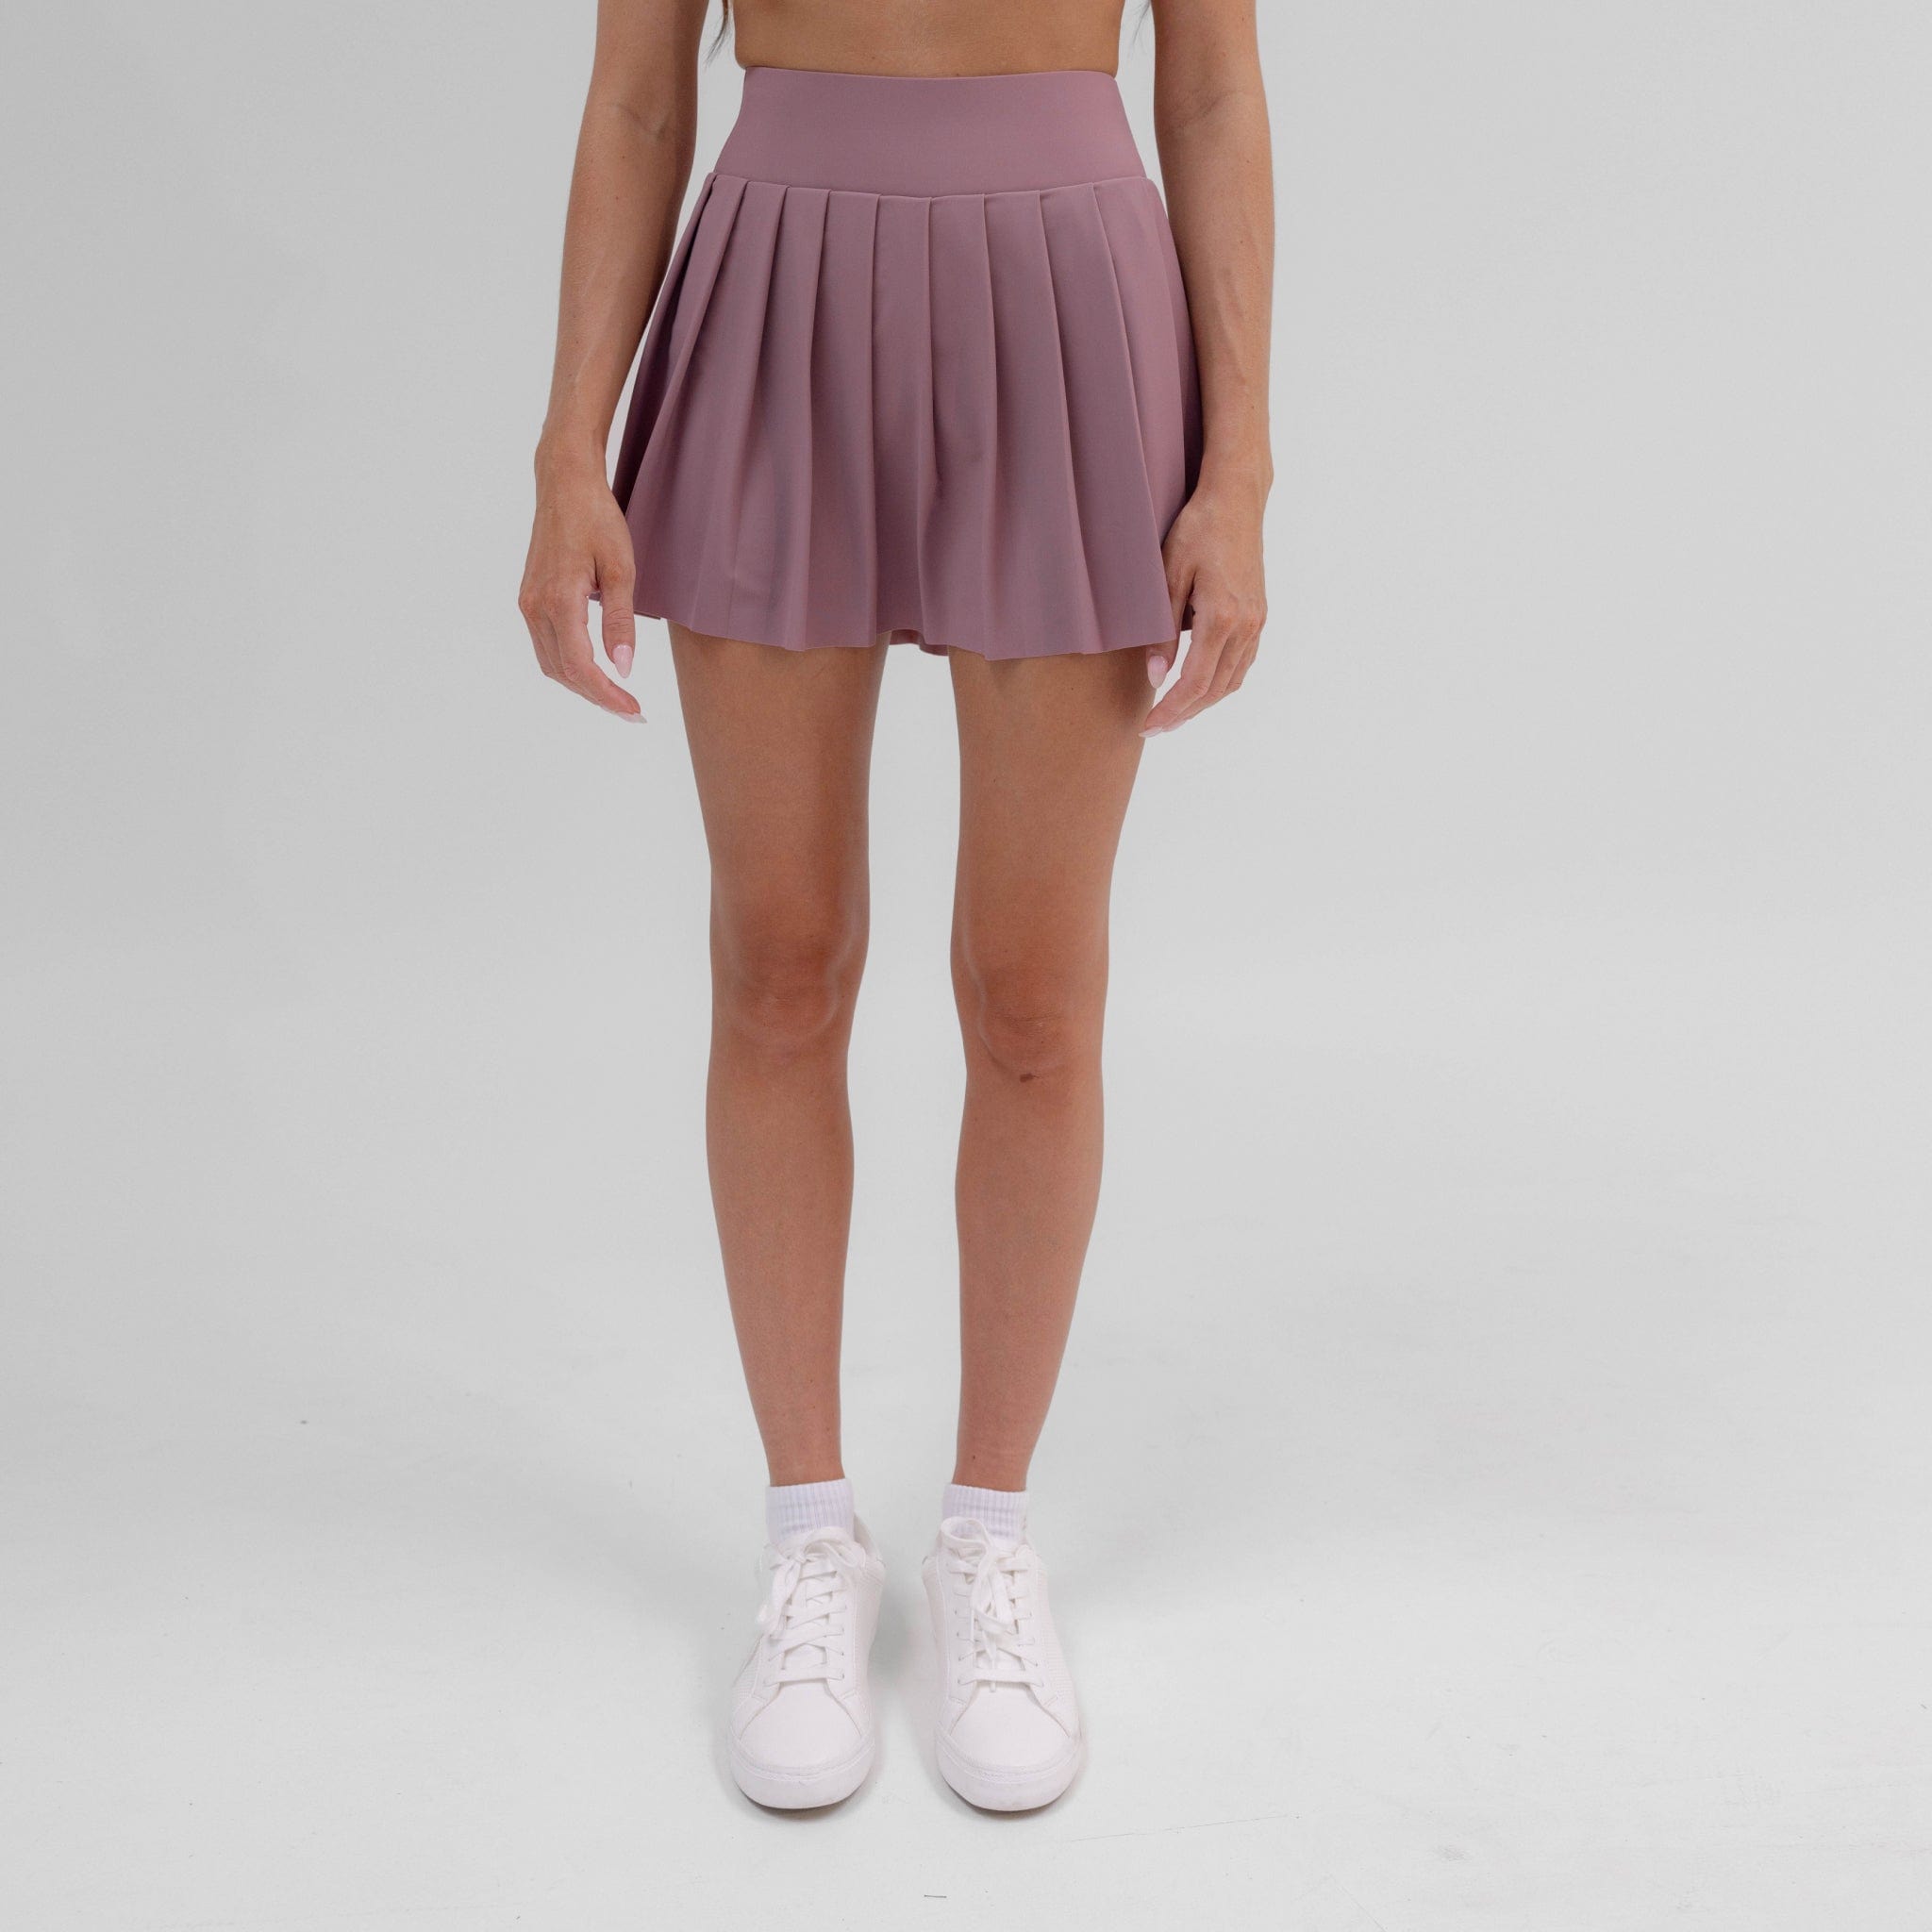 Principle Skirt